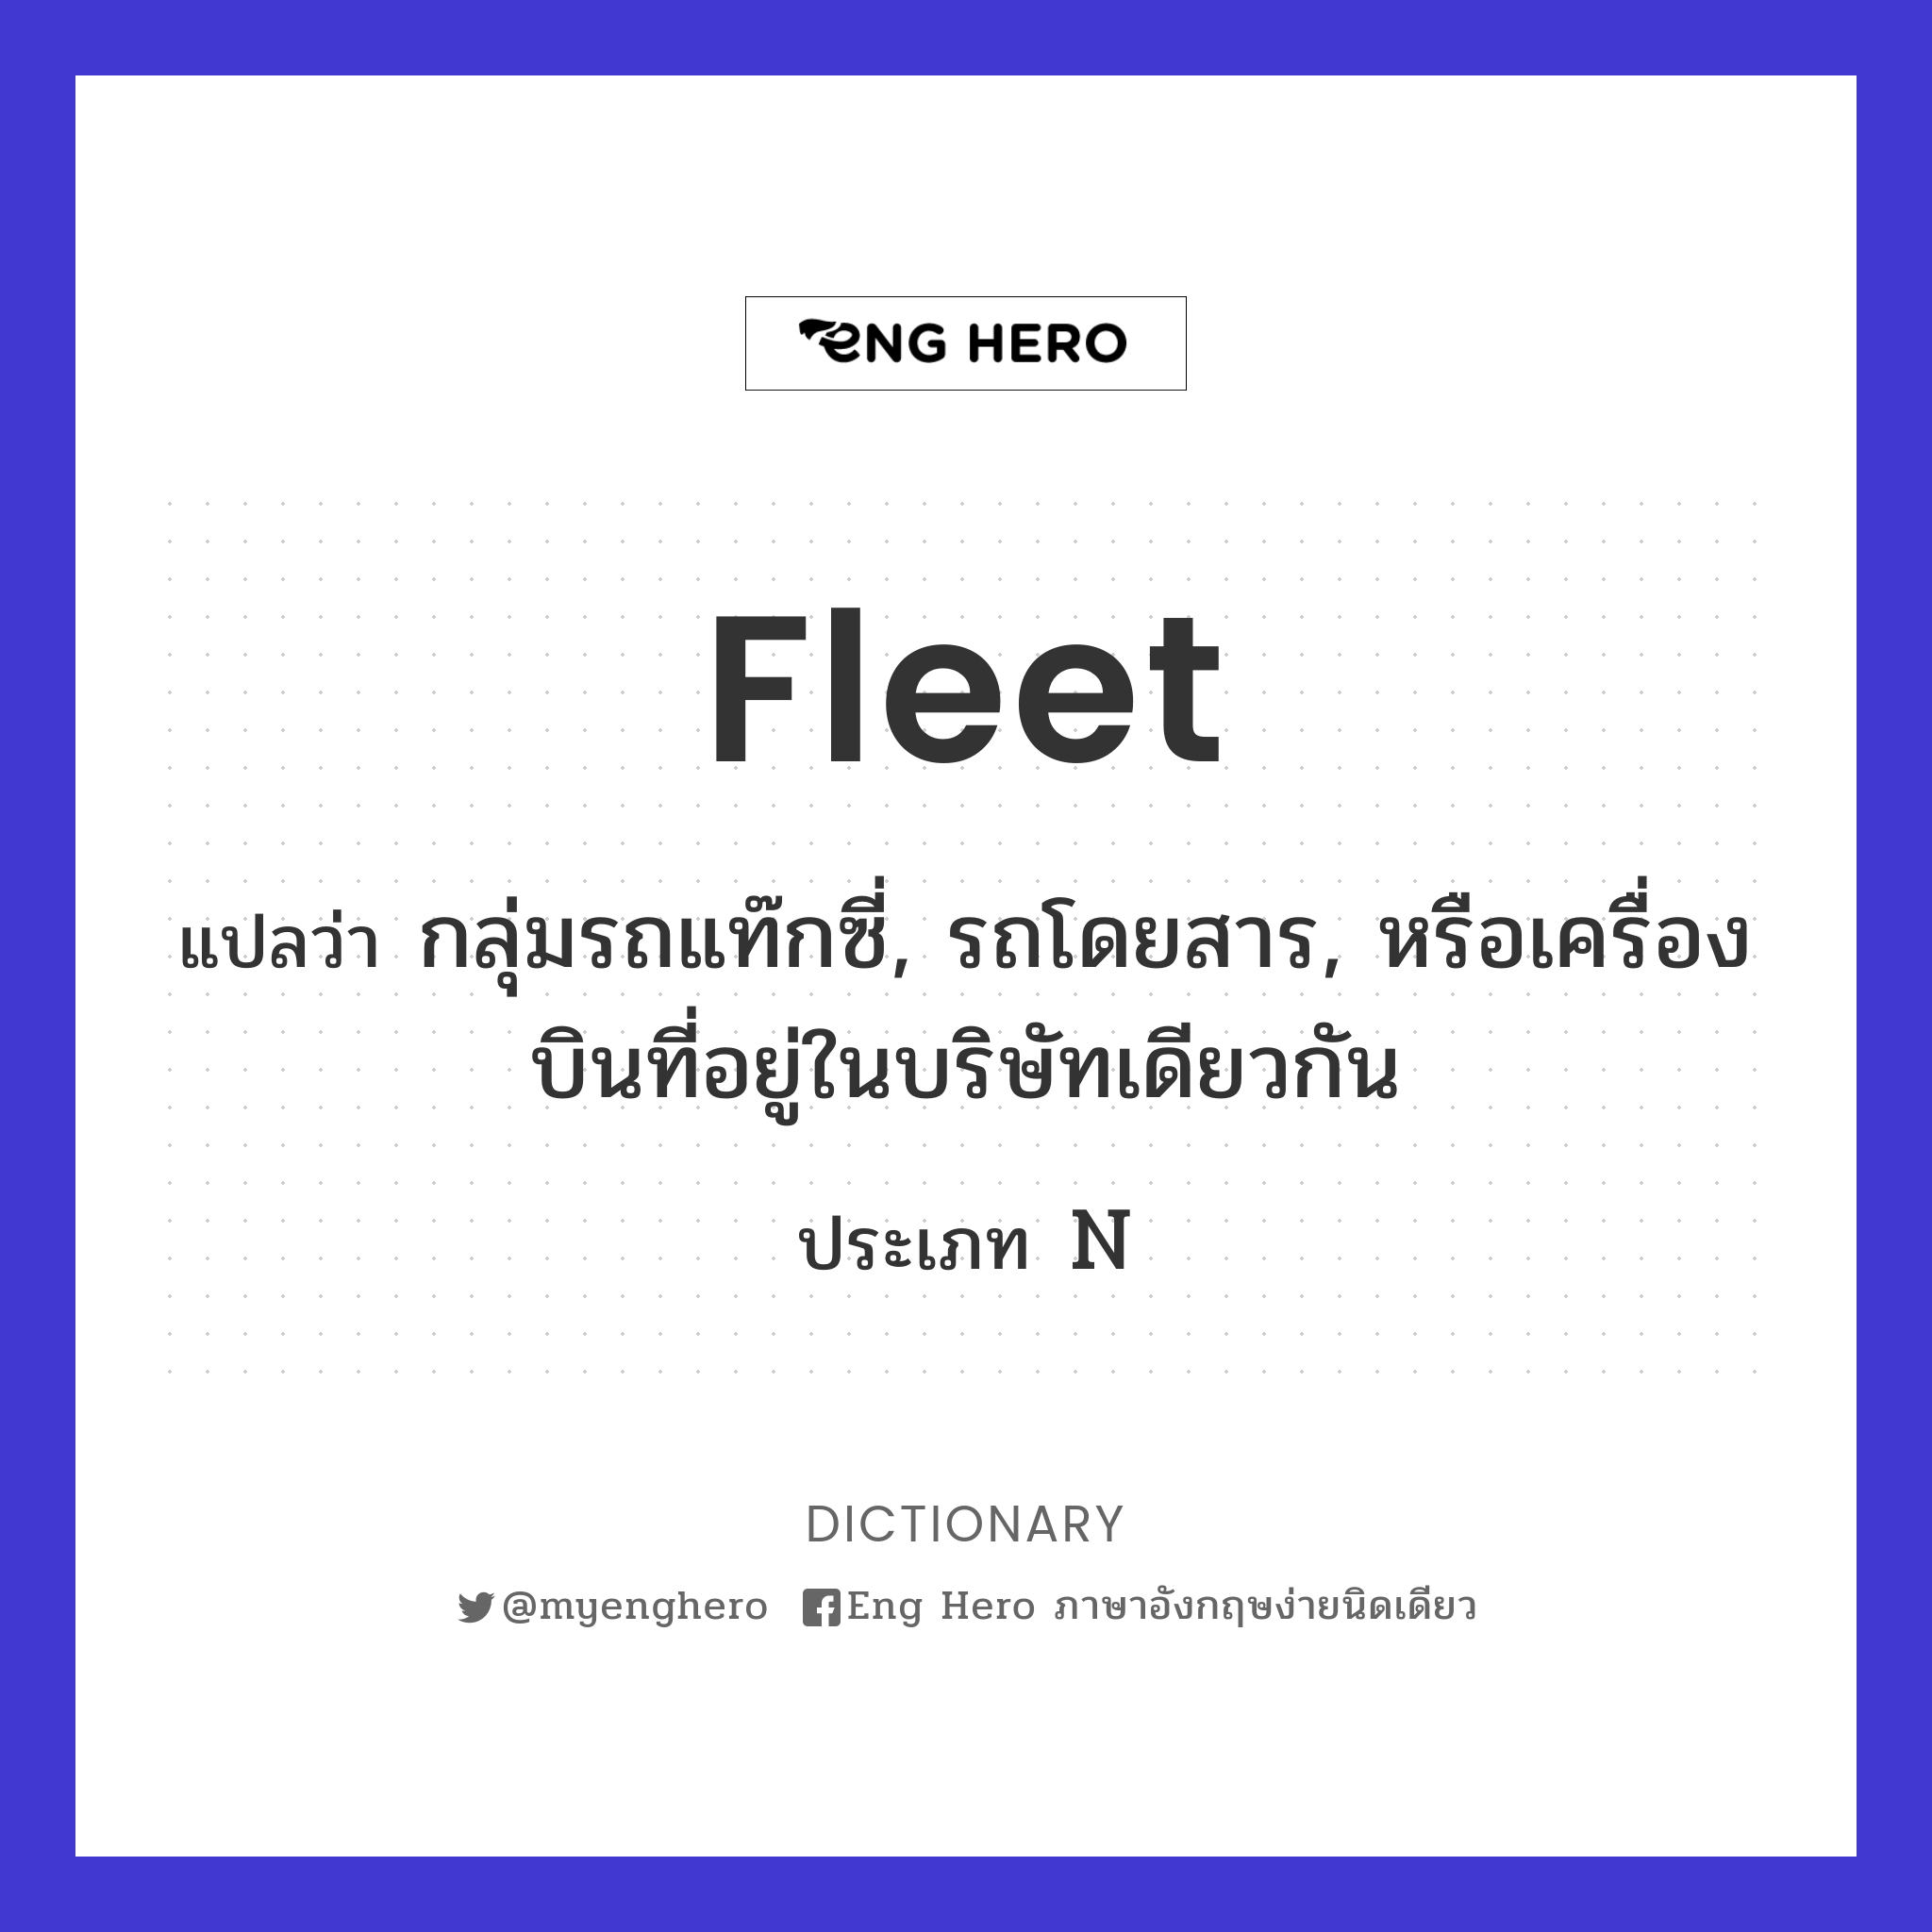 fleet